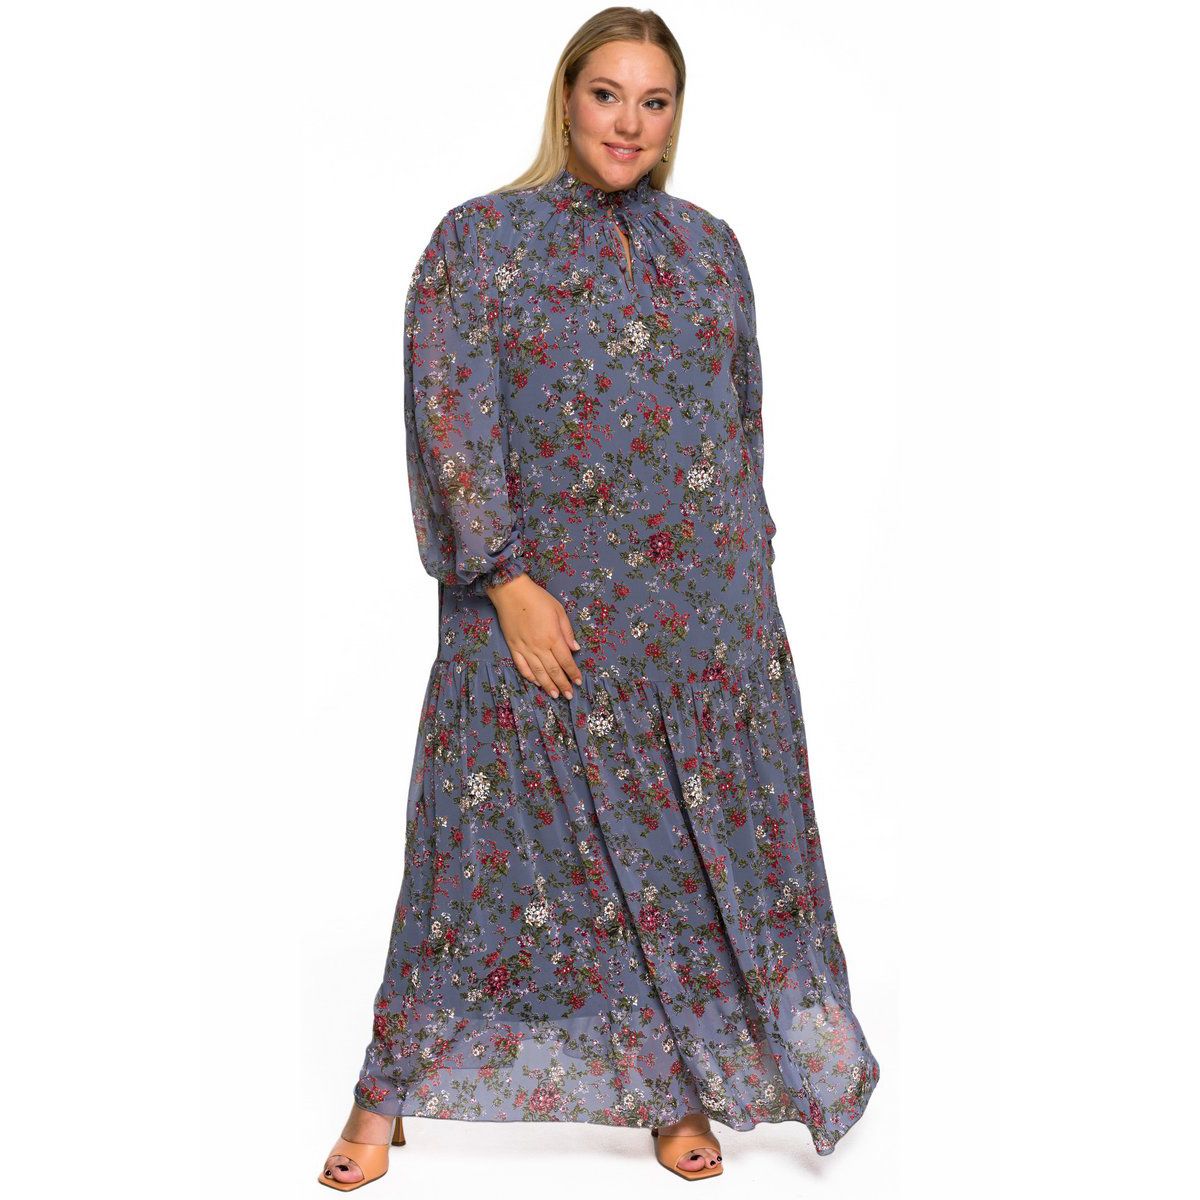 Платье шифоновое, длинное, со стоечкой, присборенной юбкой и рукавом "фонарик", принт цветочный на графитовом